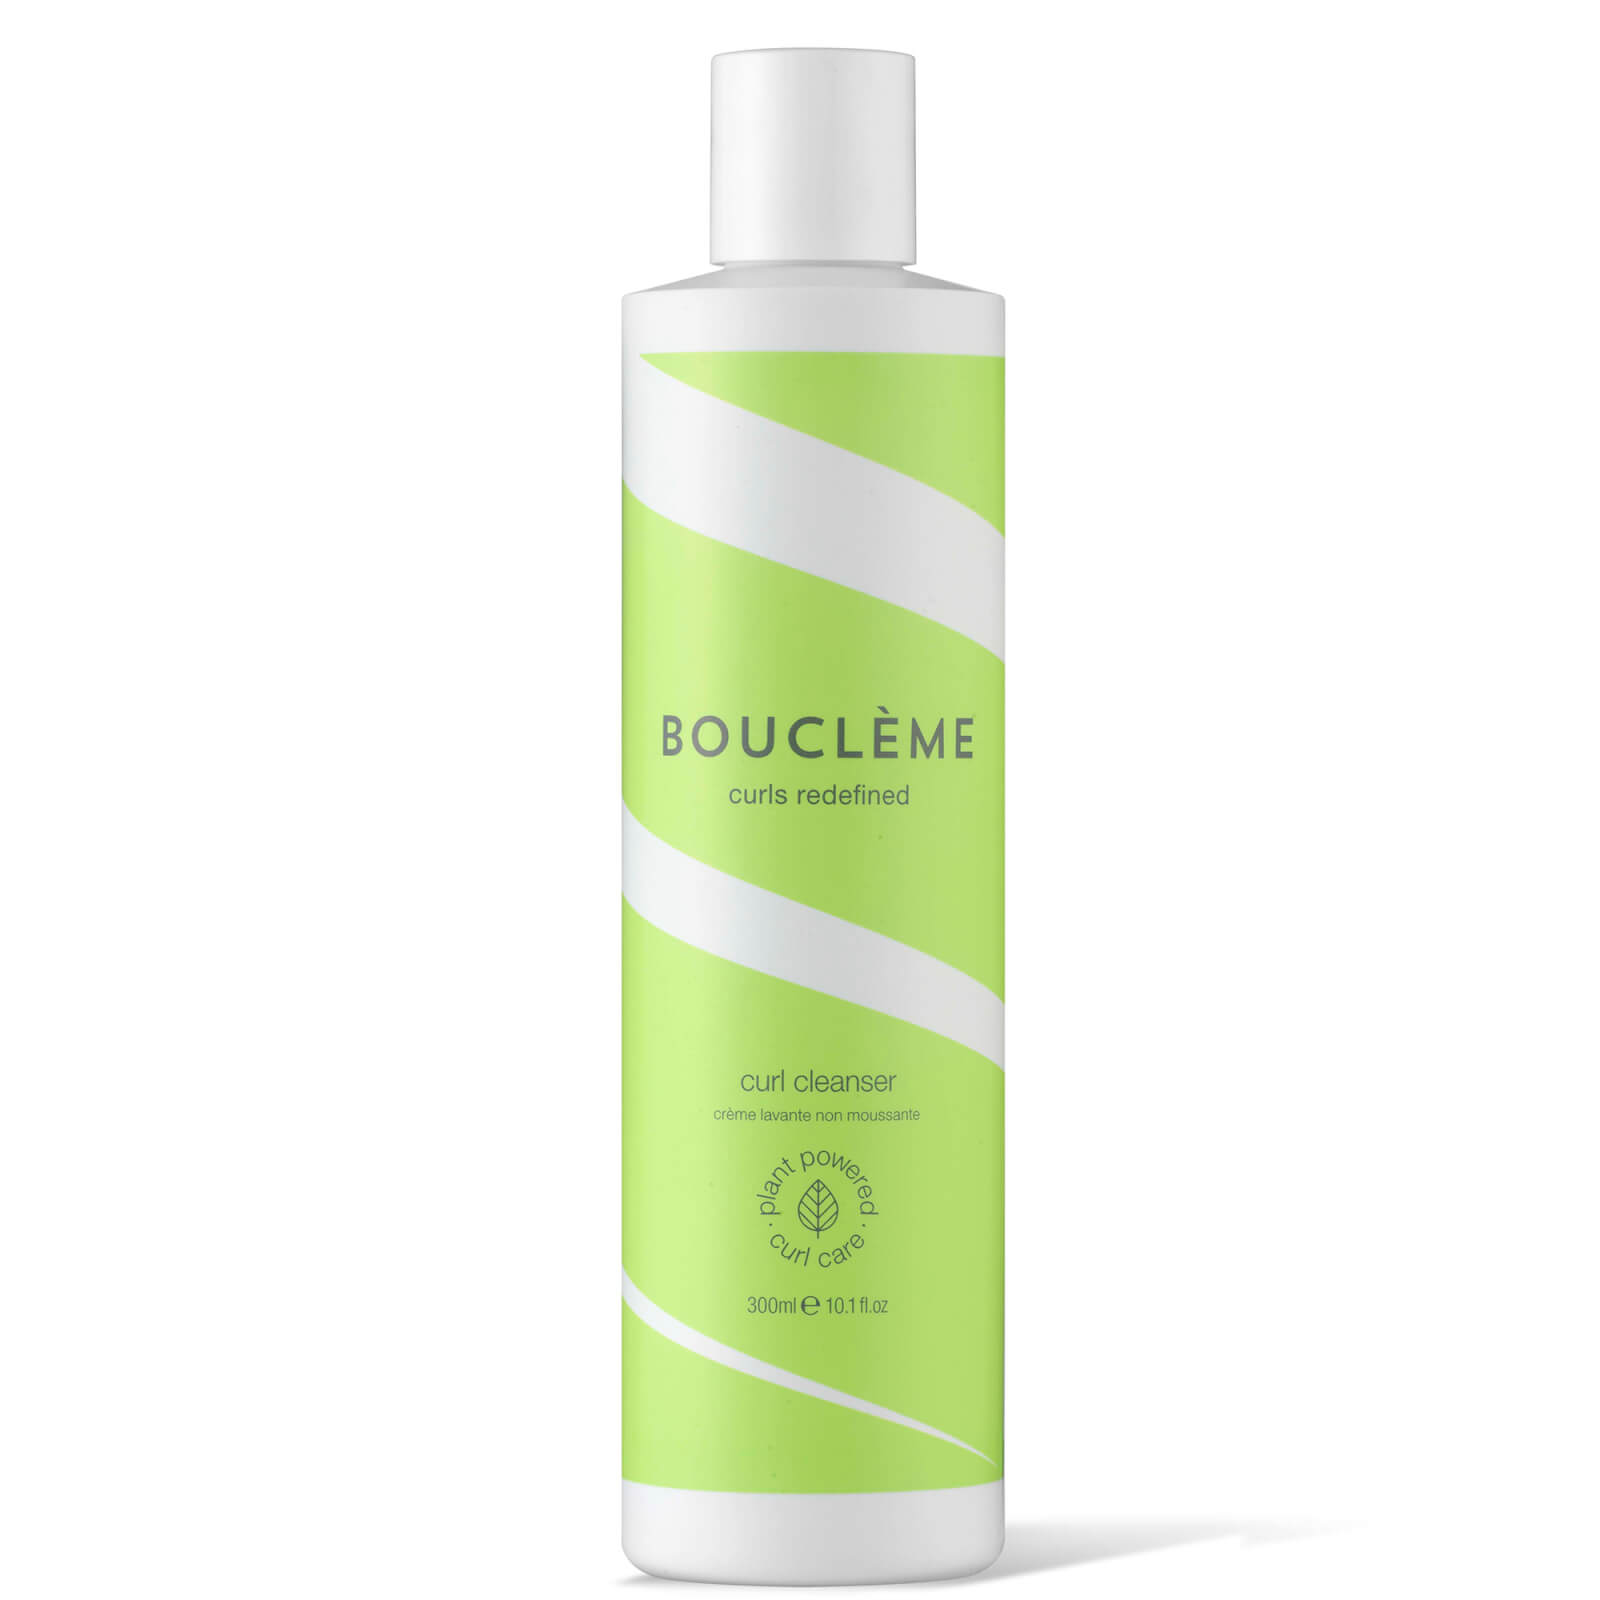 Фото - Засіб для очищення обличчя і тіла Bouclème Curl Cleanser produkt oczyszczający do włosów kręconych 300 ml 10